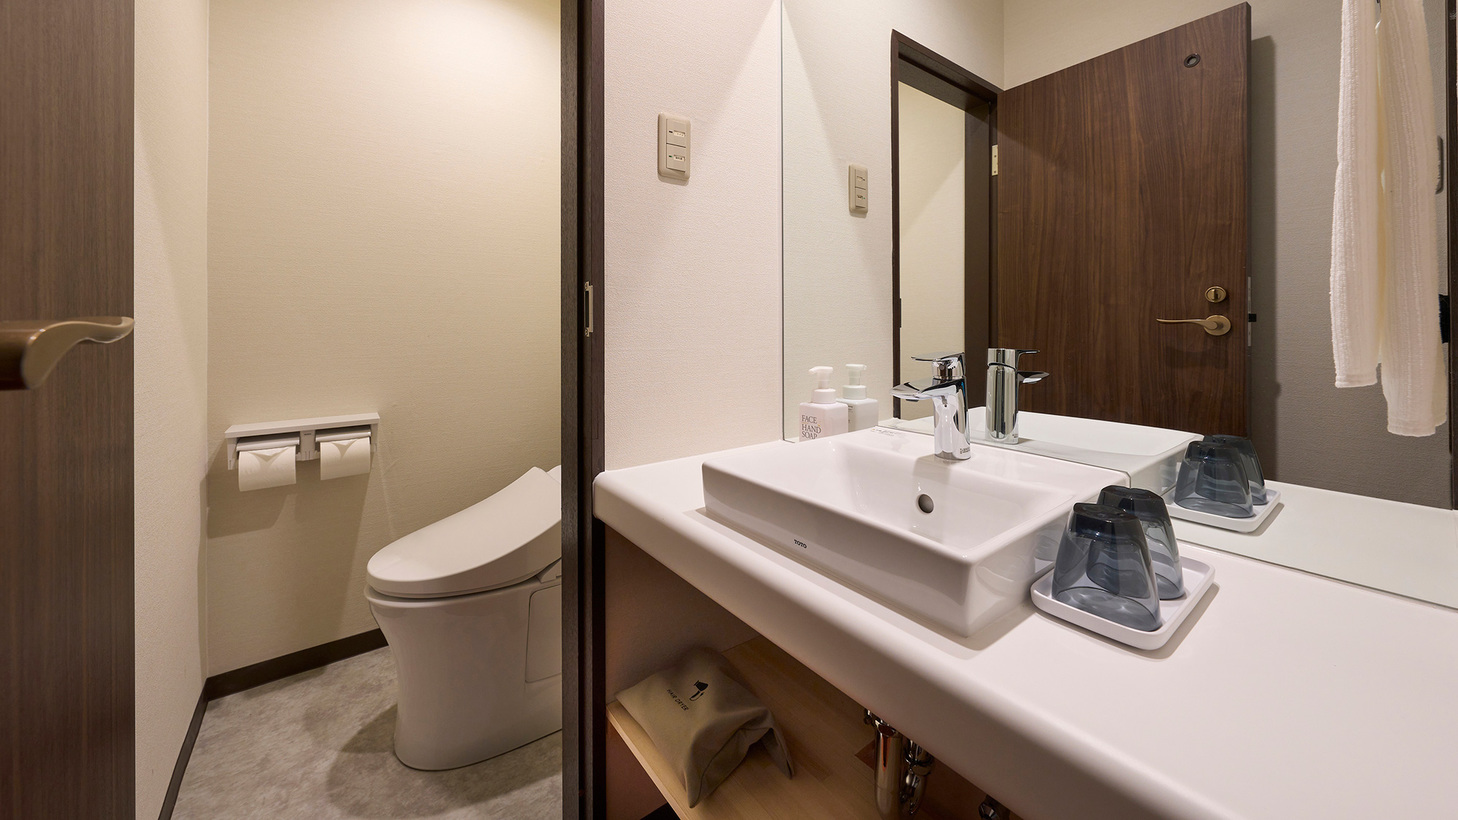 カジュアルルームはシンプルに独立した「洗面台」「トイレ」のみを設置したリーズナブルな価格のお部屋